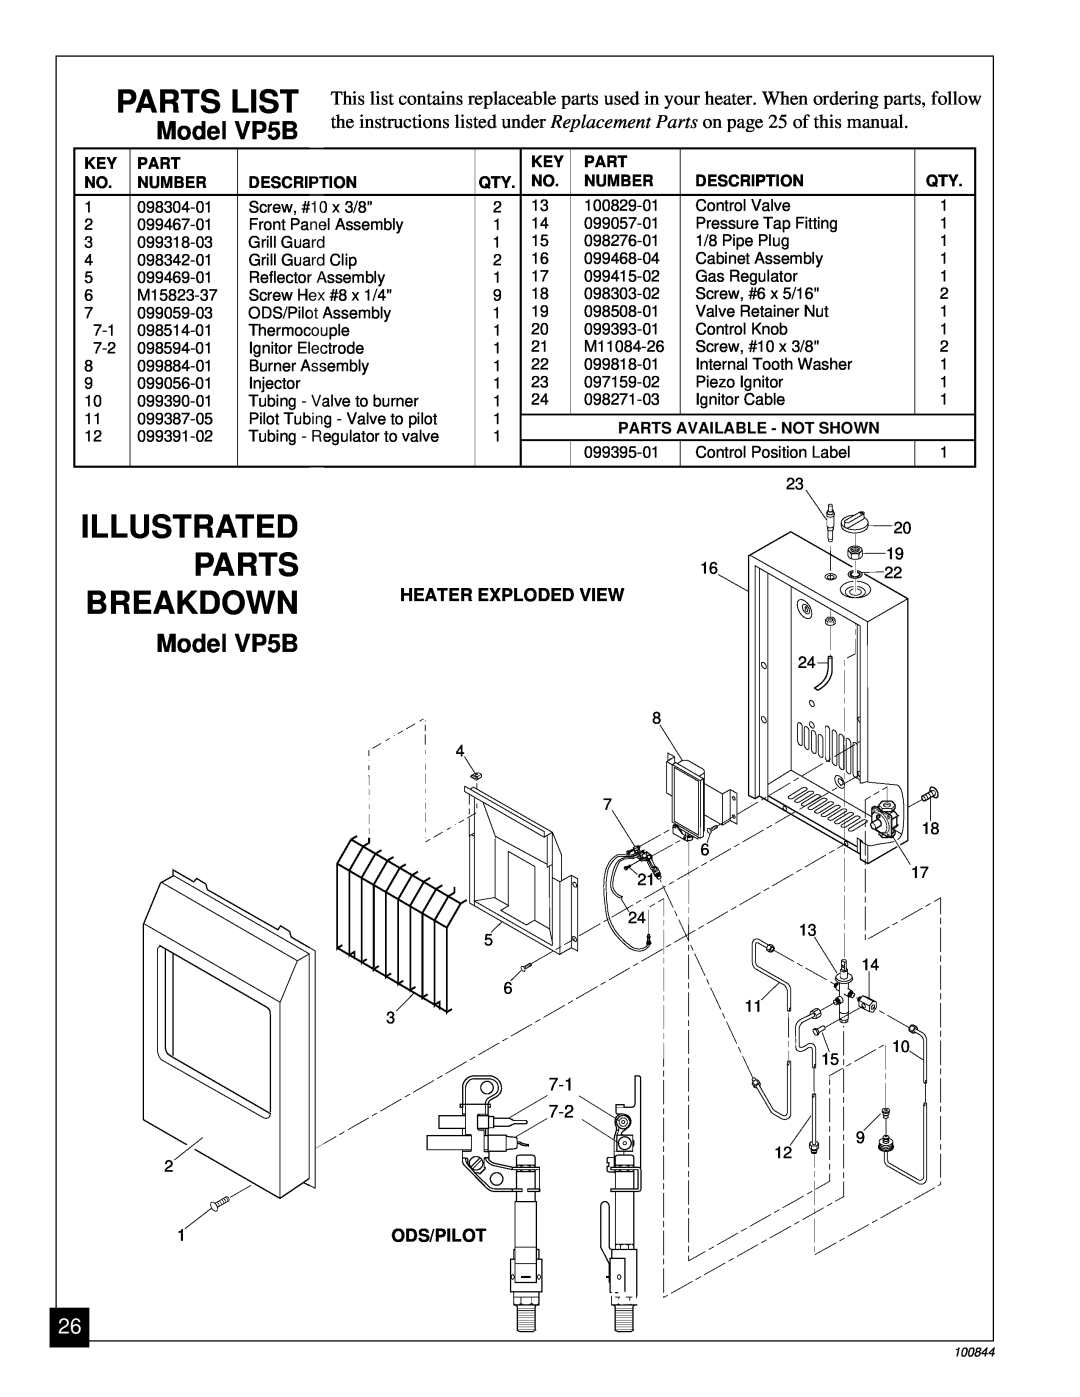 Desa Parts List, Illustrated Parts Breakdown, Model VP5B, Ods/Pilot, Number, Description, Parts Available - Not Shown 